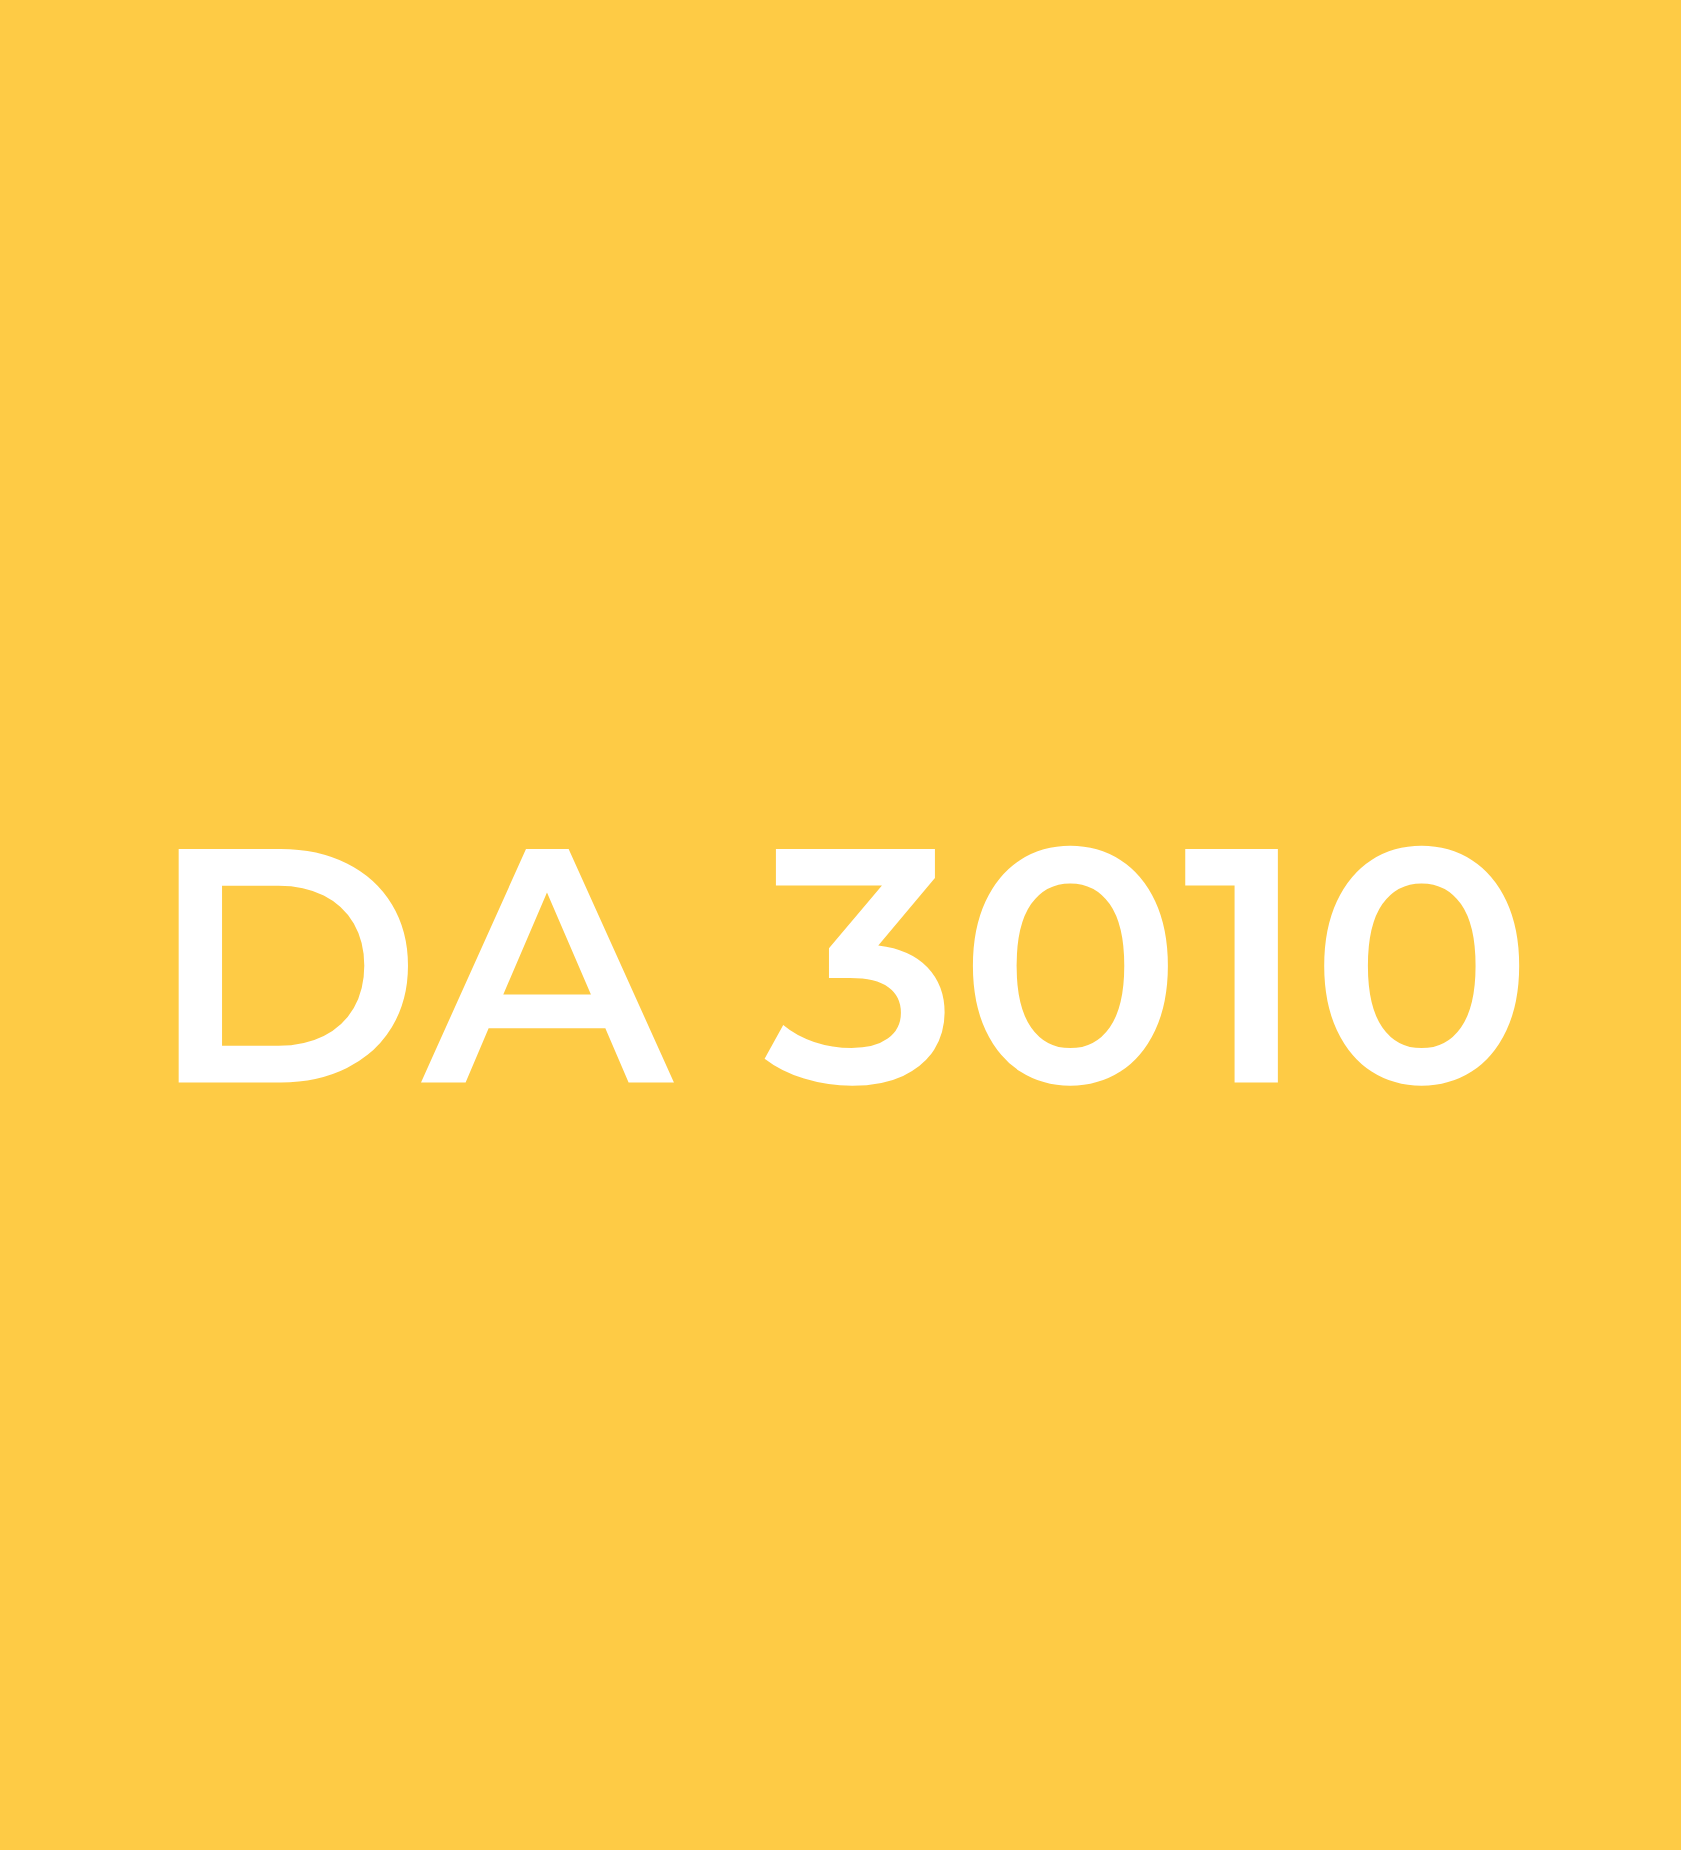 DA 3010